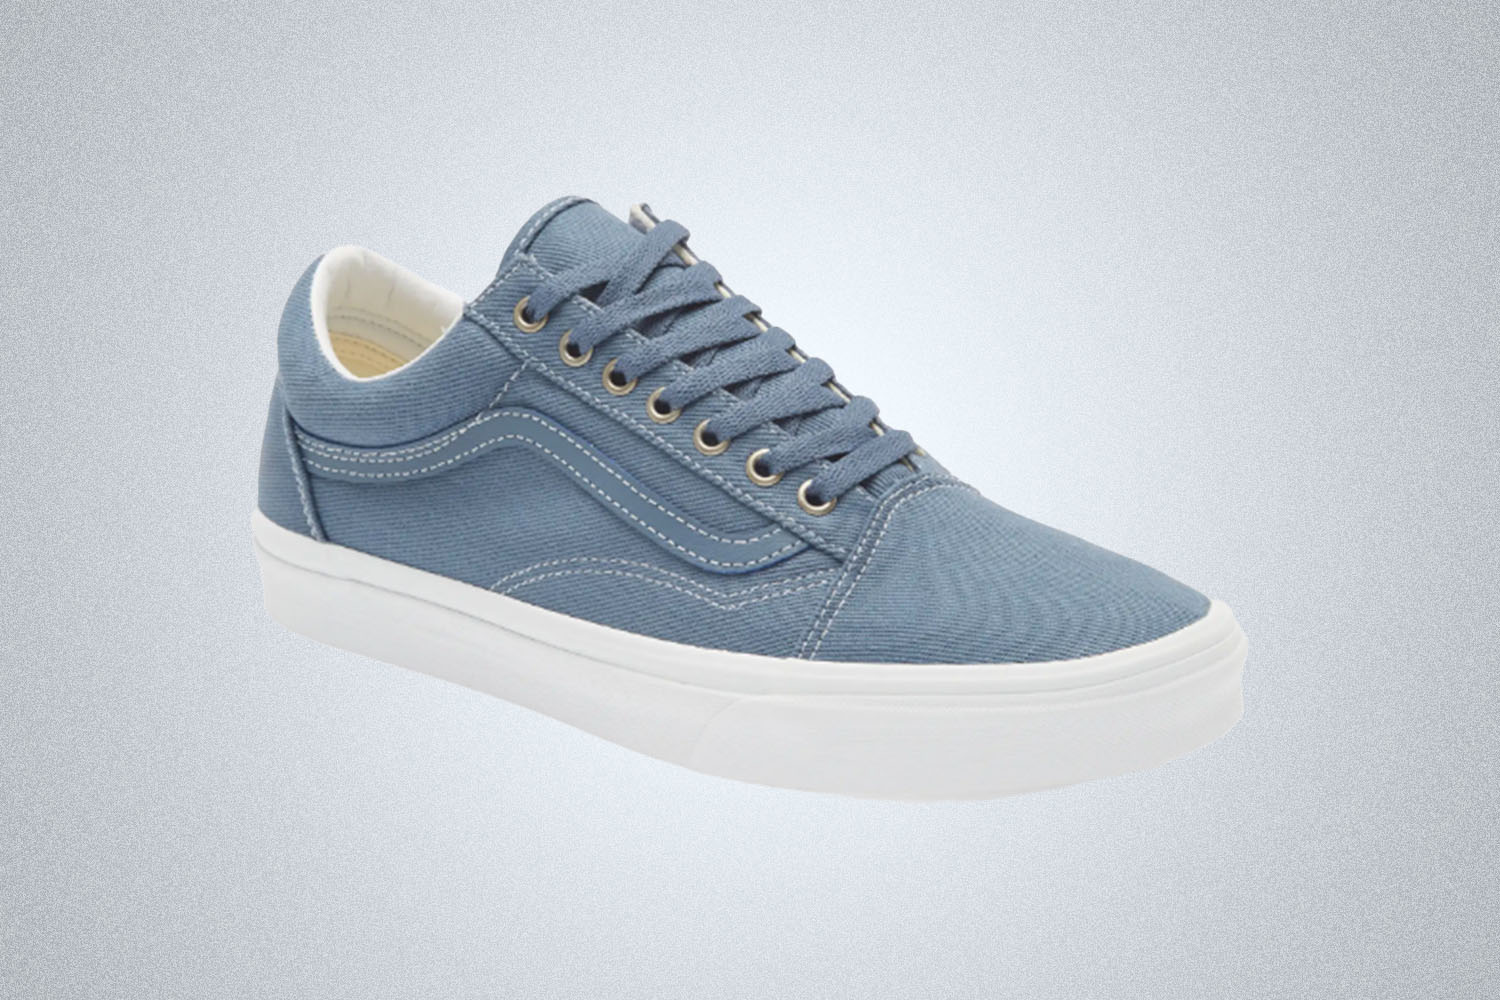 A pair of Vans Old Skool sneakers in a denim blue on a grey background